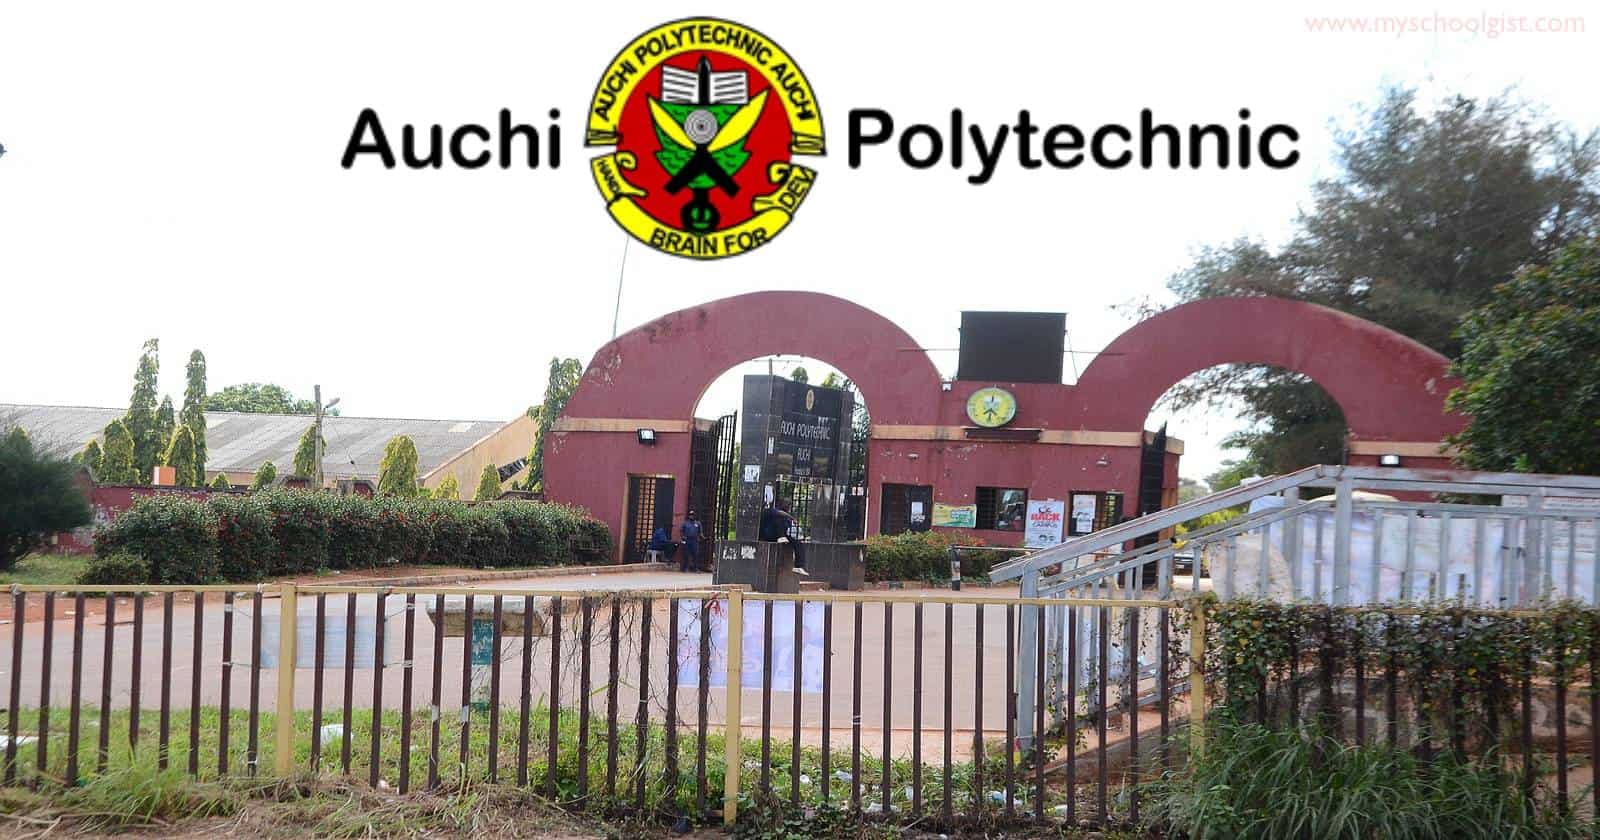 Auchi Polytechnic Bans Jungle/Bush/Timberland Boots on Campus